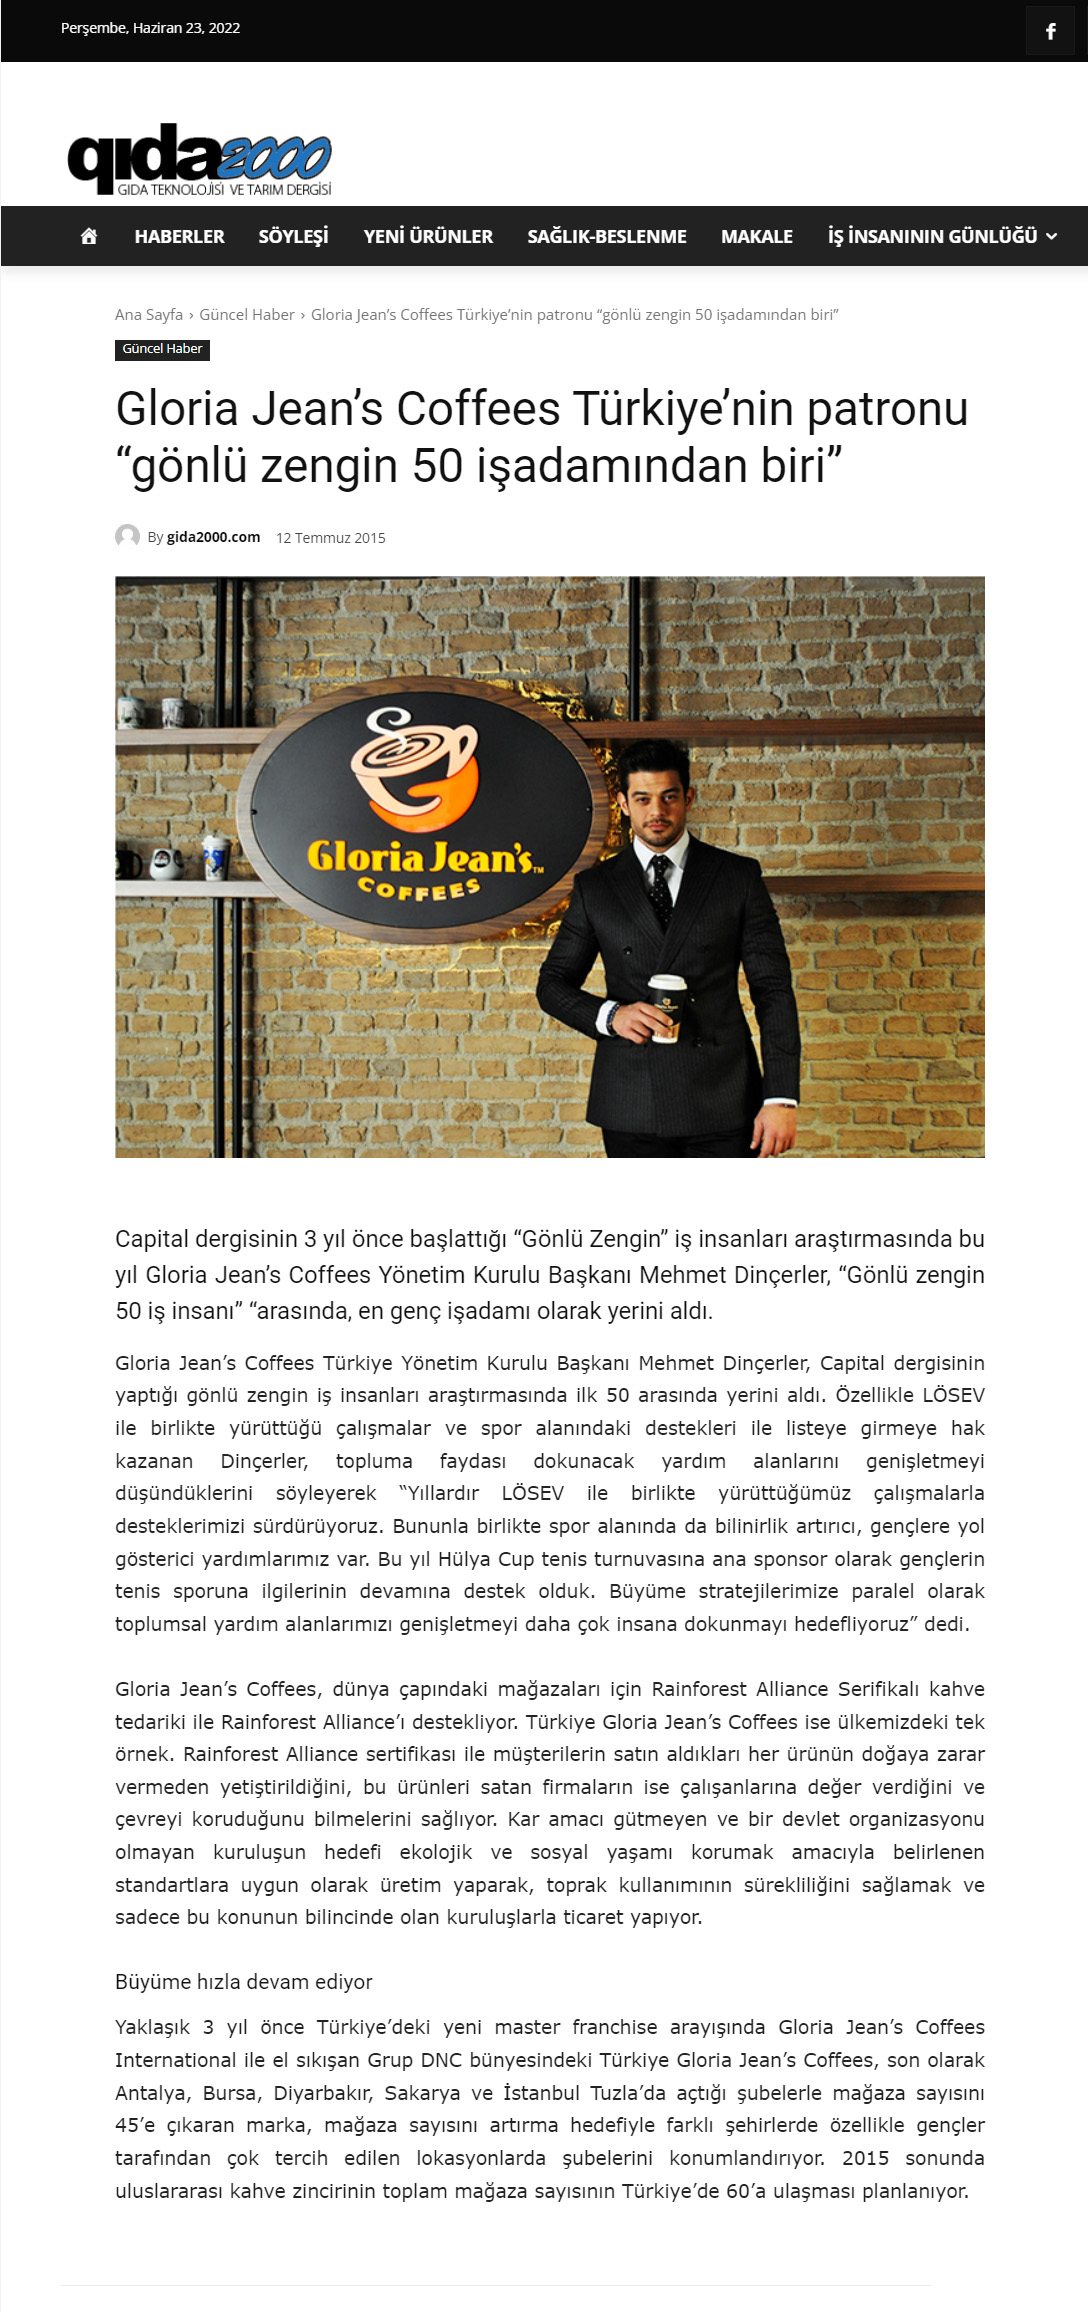 Gloria Jean’s Coffees Türkiye’nin patronu “gönlü zengin 50 işadamından biri"